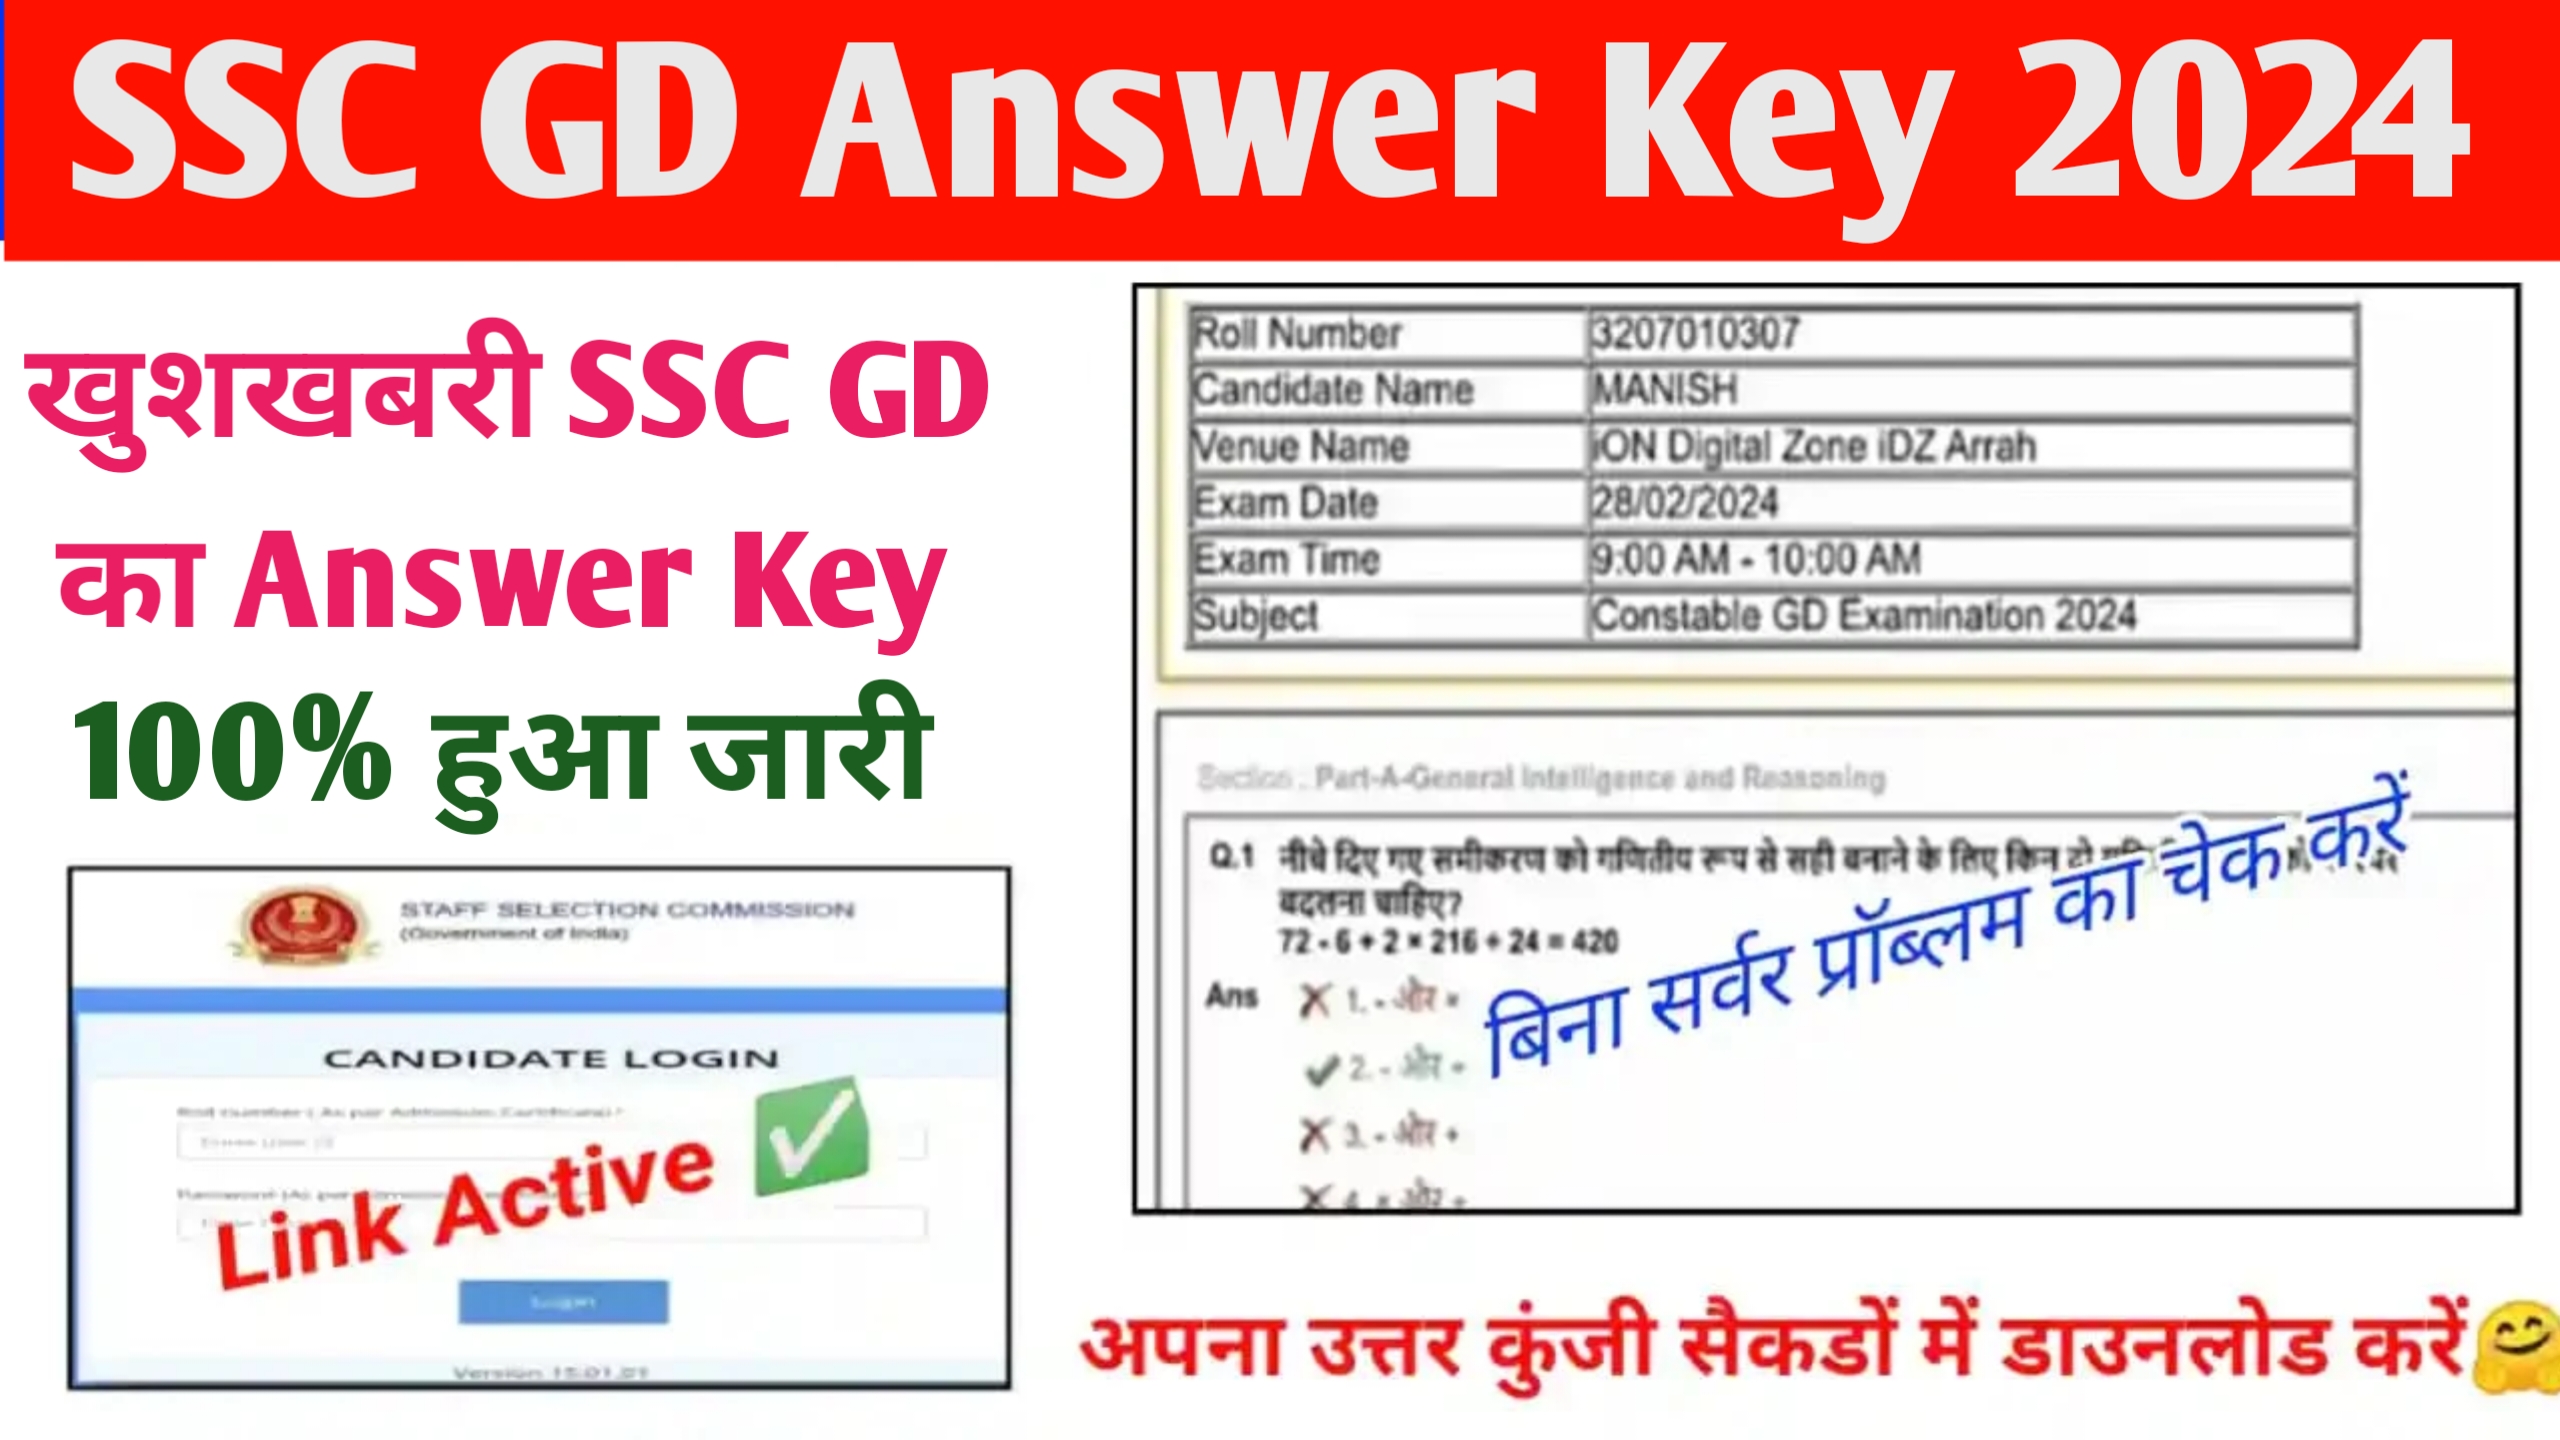 SSC GD Answer Key 2024 Out Today: अचानक उत्तर कुंजी हुआ जारी,डायरेक्ट यहां से चेक करें